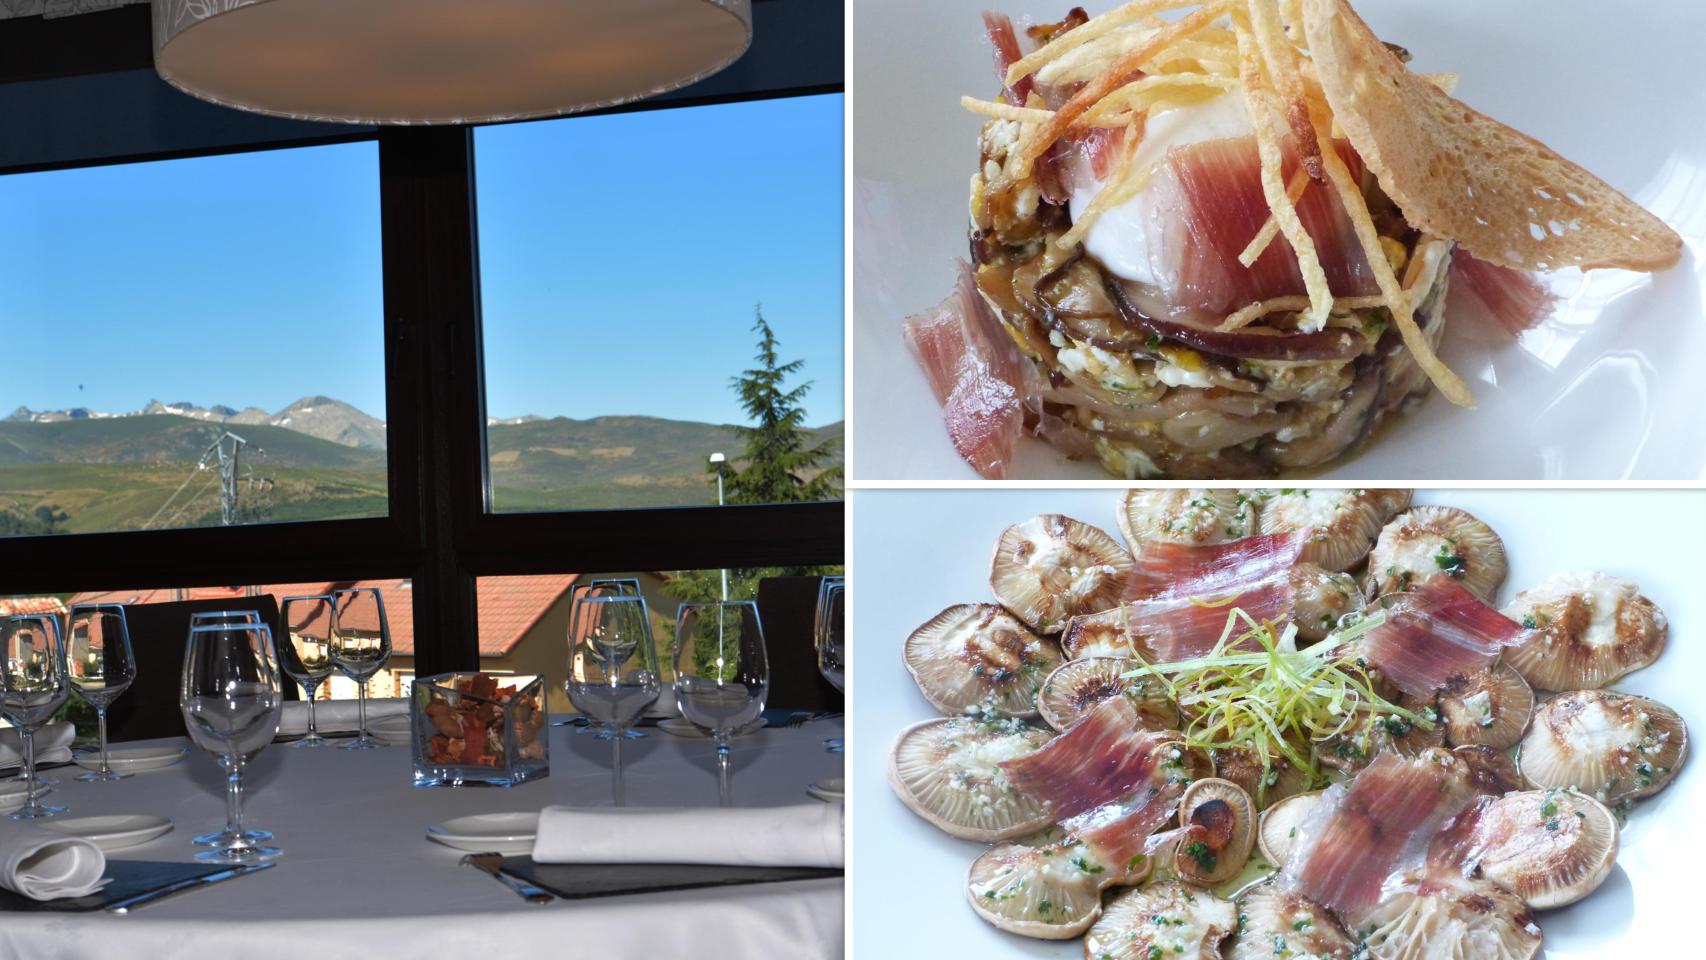 Las espectaculares vistas desde el restaurante La Mira de Gredos y dos de sus platos_ huevos rotos y setas con jamón